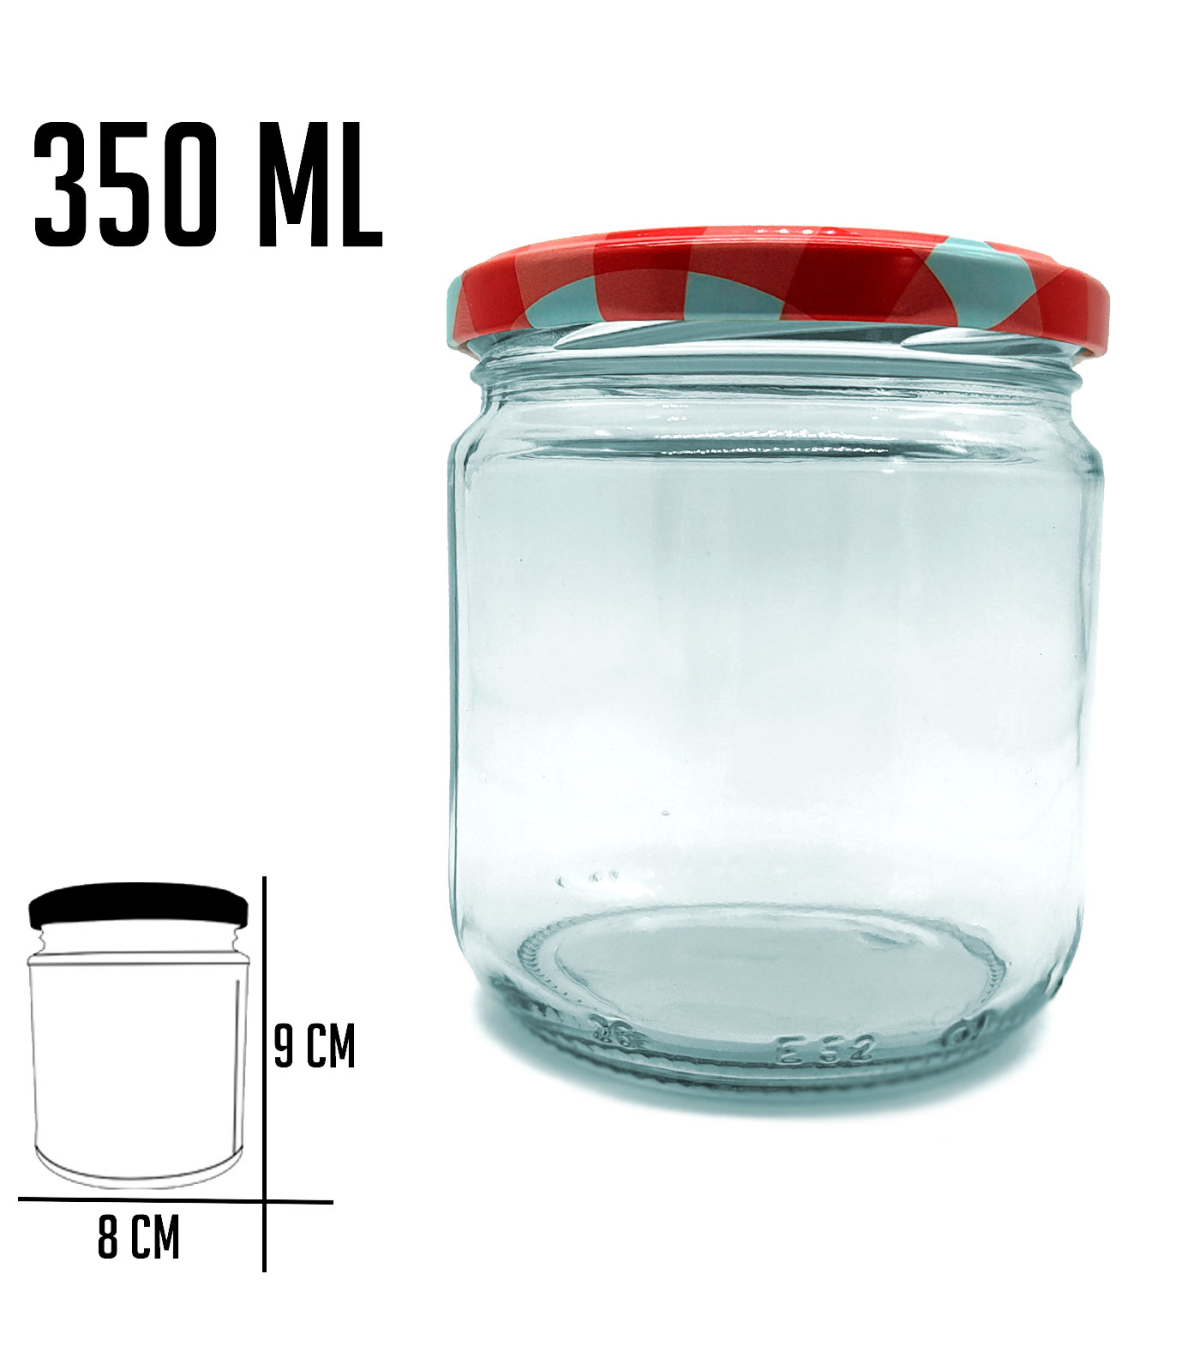 Tradineur - Pack de 3 tarros de cristal con tapa metálica de 450 ml, juego  de frascos de vidrio para caramelos, gominolas, condi